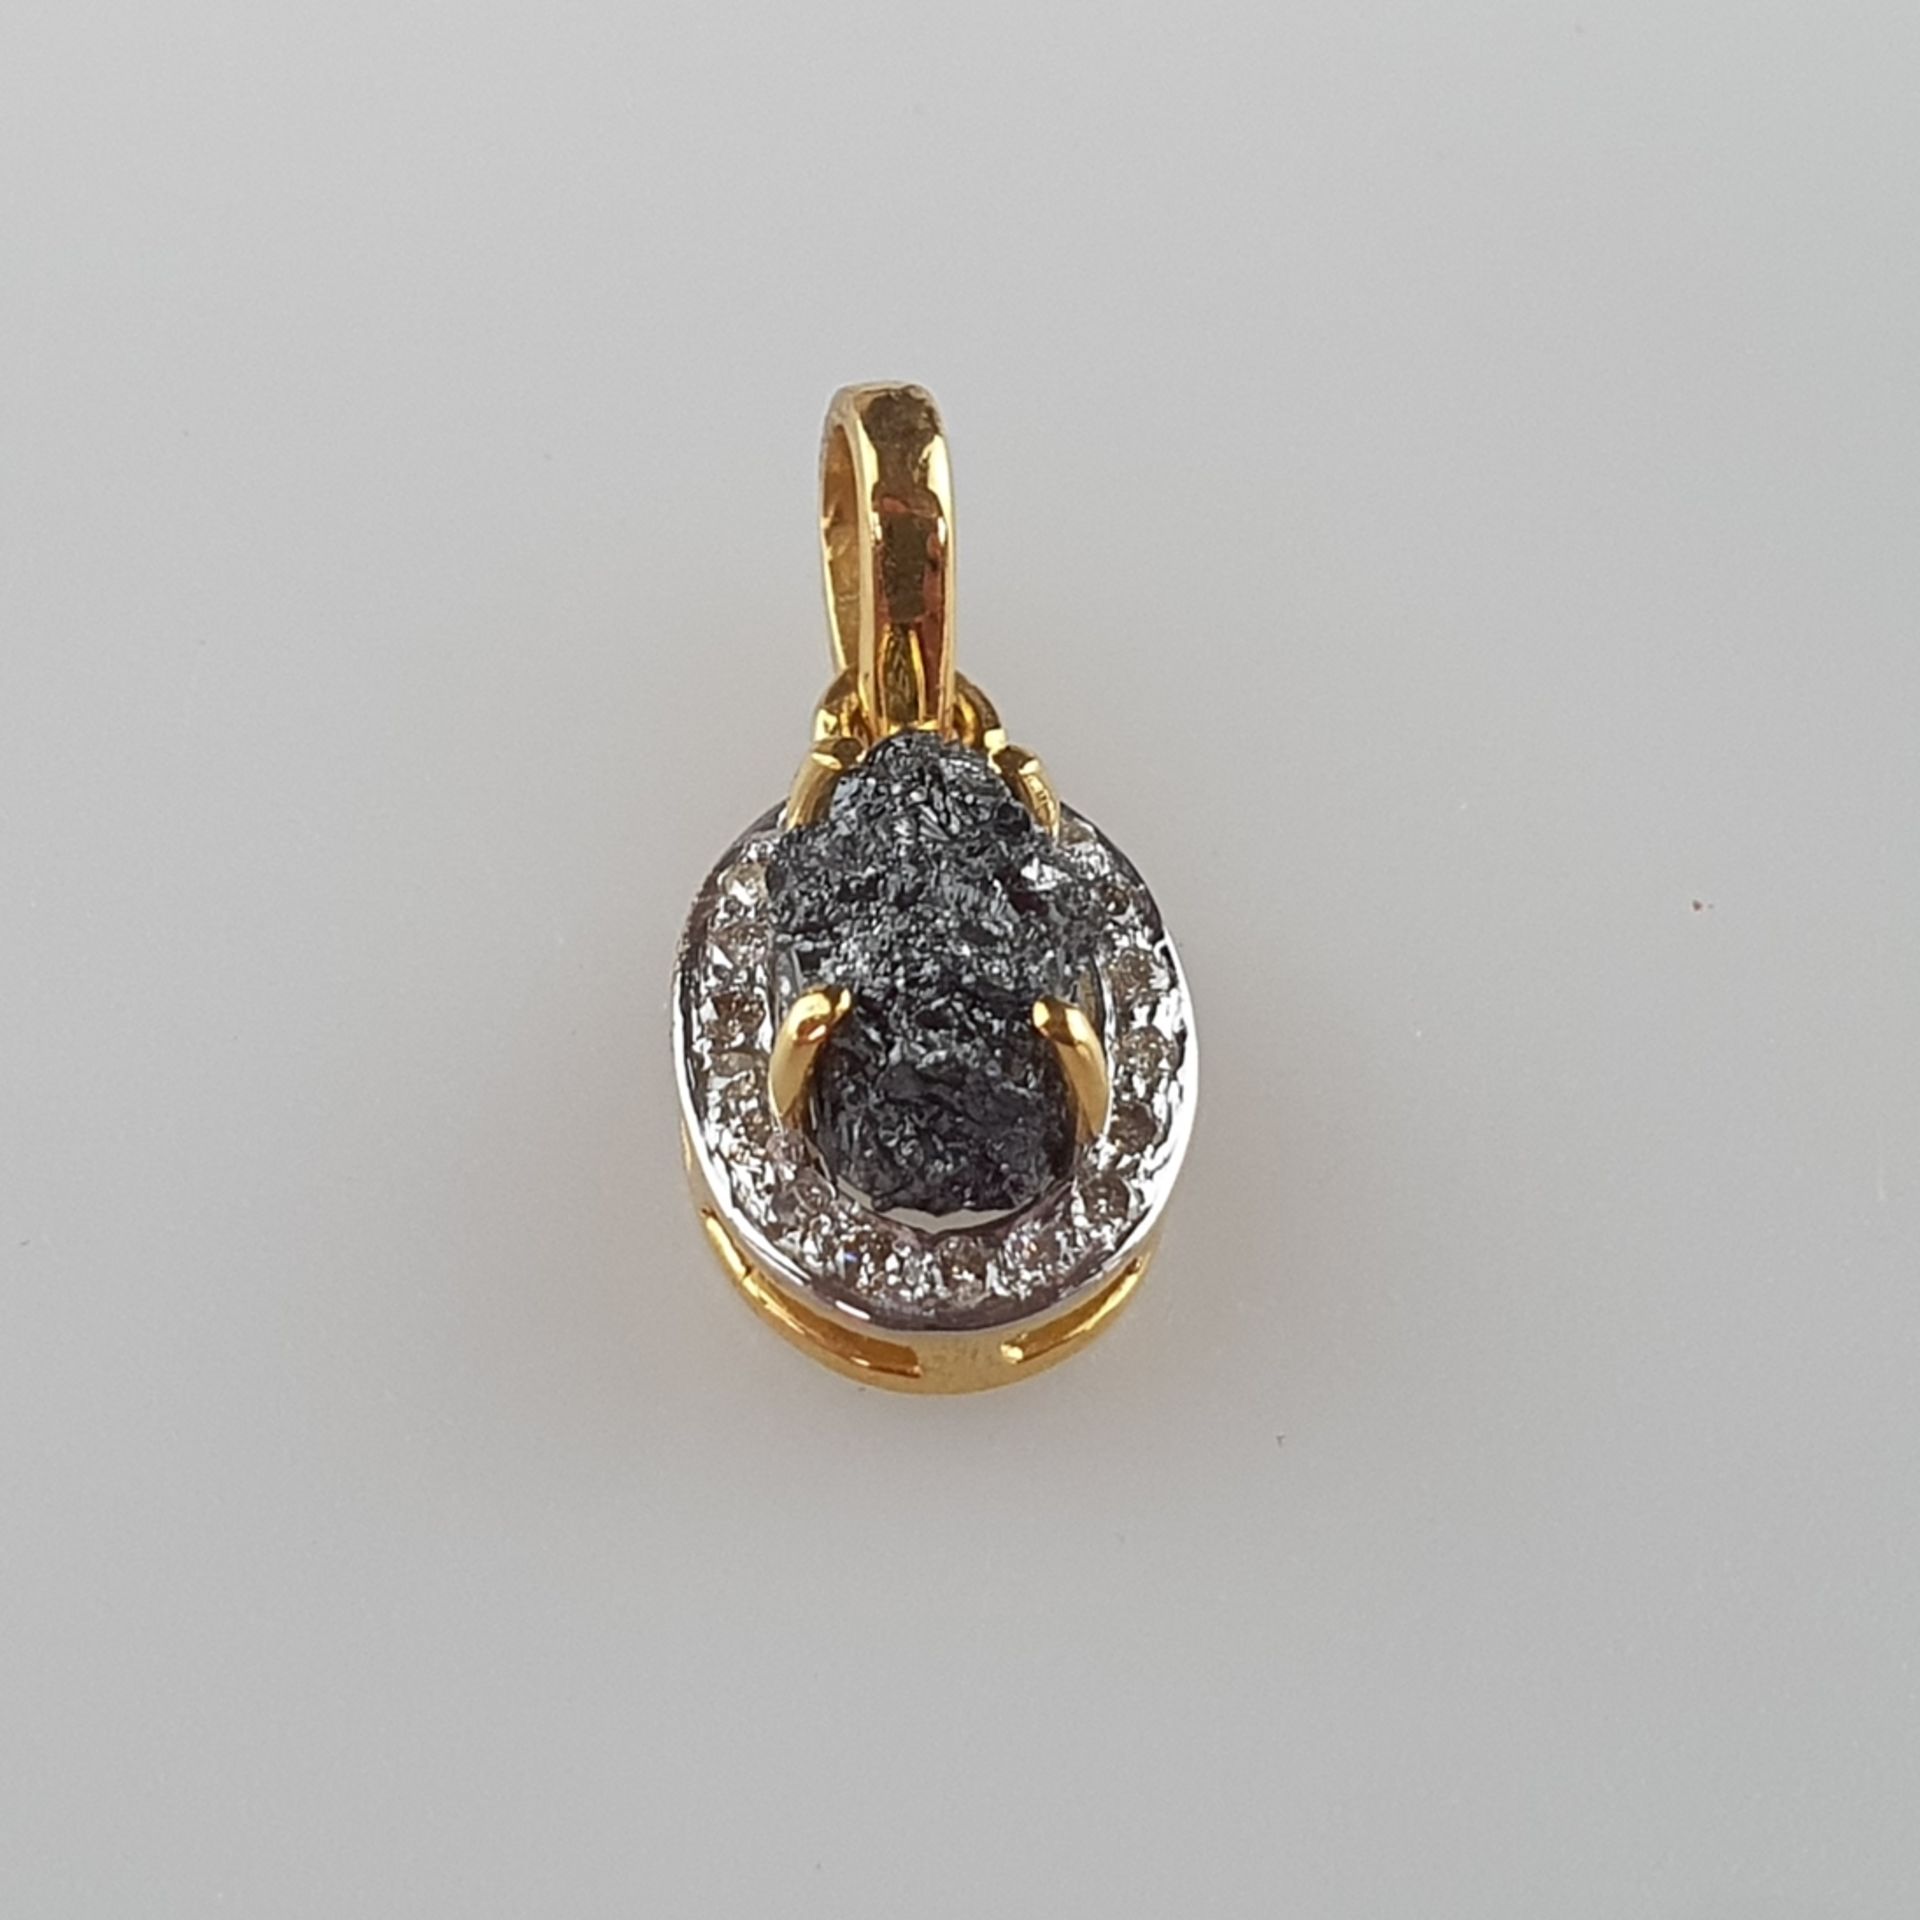 Rohdiamant-Goldanhänger - 14Kt.-Gelbgold 585/000, gestempelt, Gewicht/Farbe Rohdiamant 4,11 ct./bra - Bild 2 aus 5